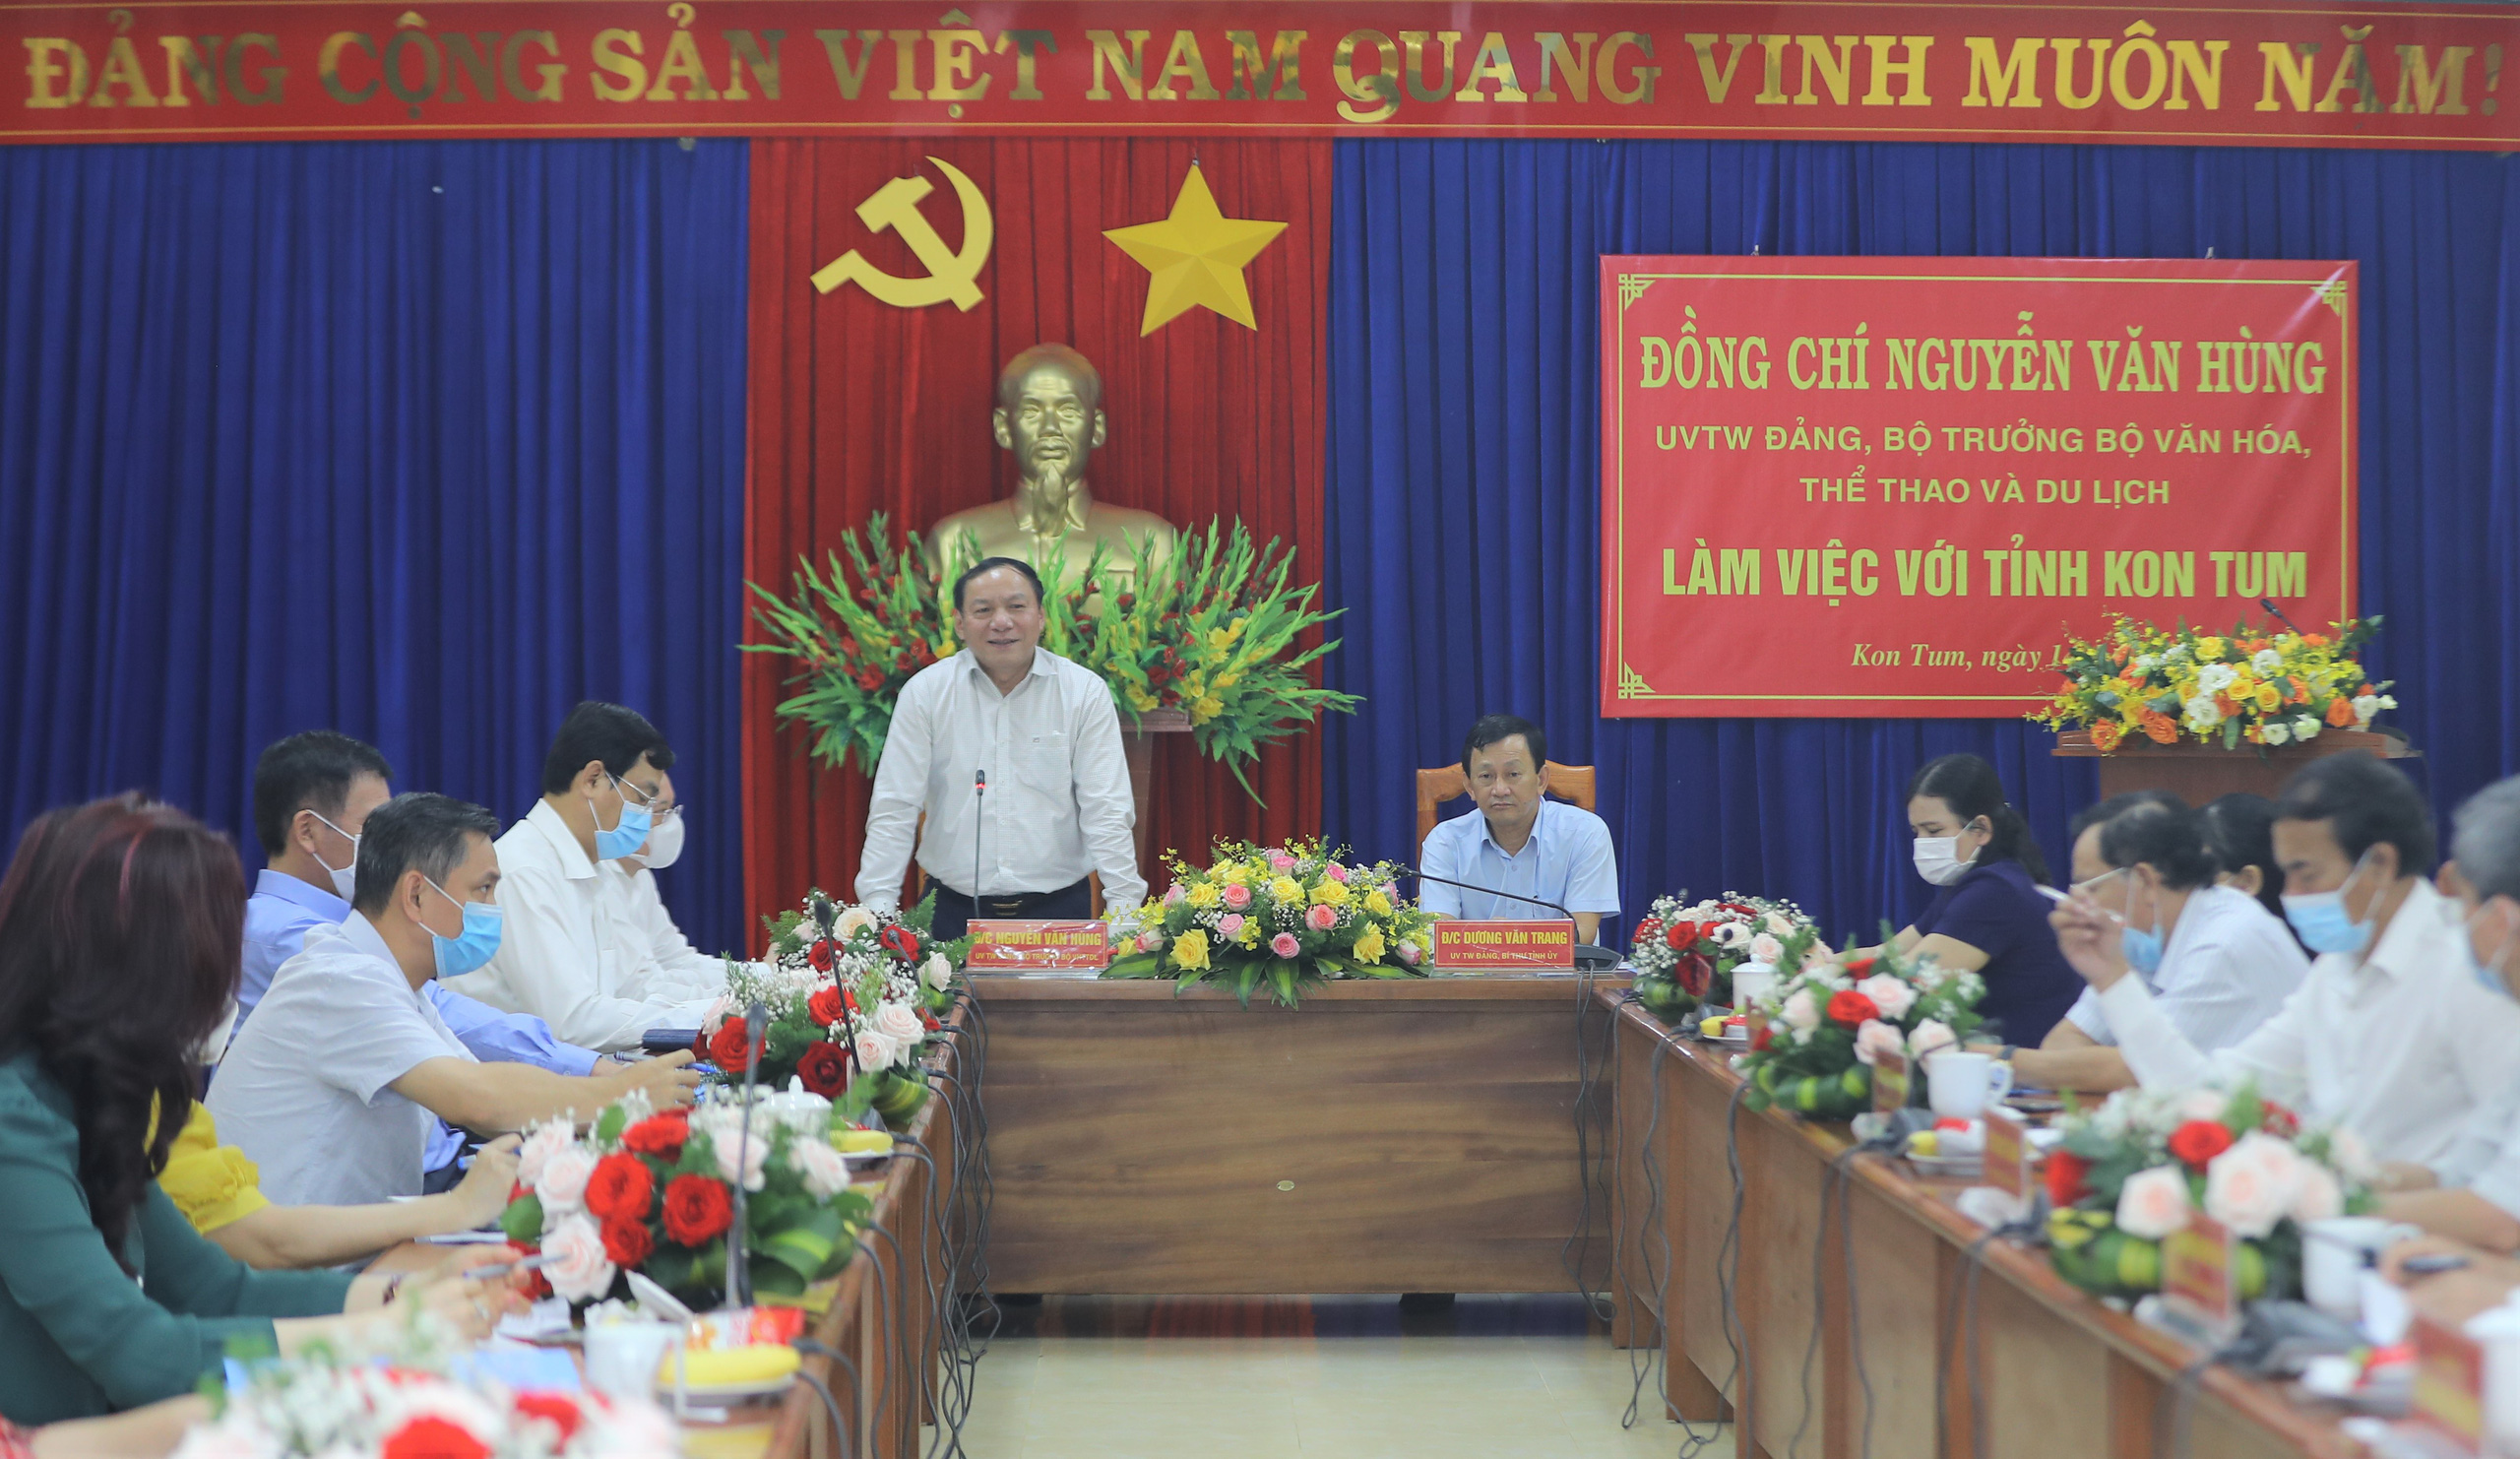 Bộ trưởng Nguyễn Văn Hùng: “Kon Tum có quang cảnh đẹp, sao không mạnh dạn đặt ước mơ trở thành trung tâm hội nghị của khu vực miền Trung-Tây Nguyên” - Ảnh 1.